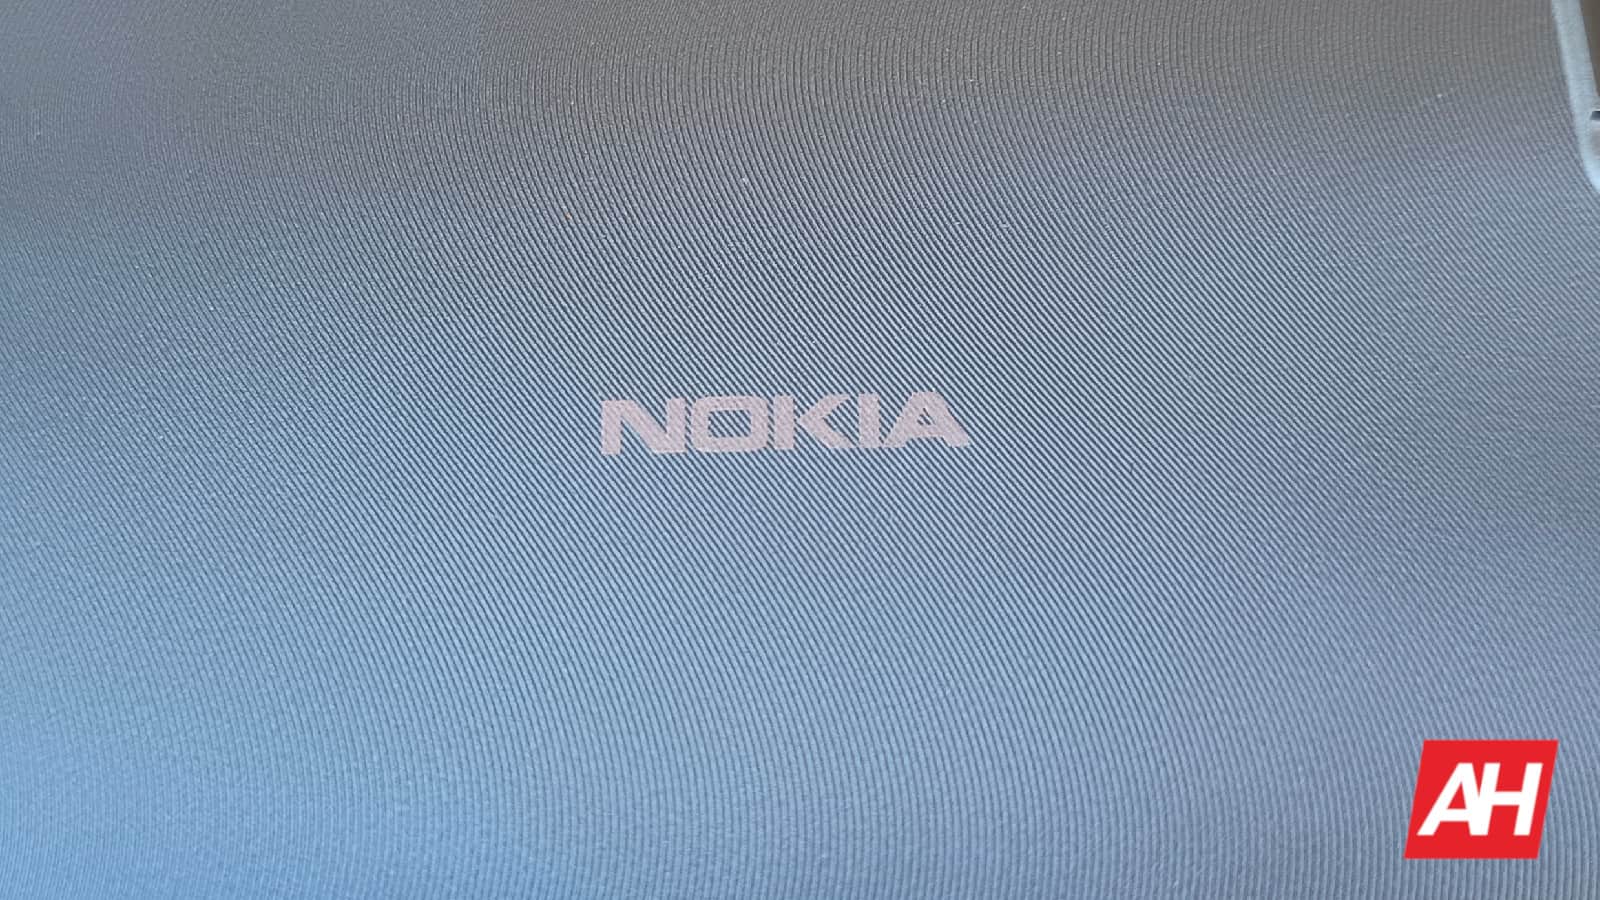 Nokia muestra tecnología de llamadas telefónicas inmersivas con audio 3D